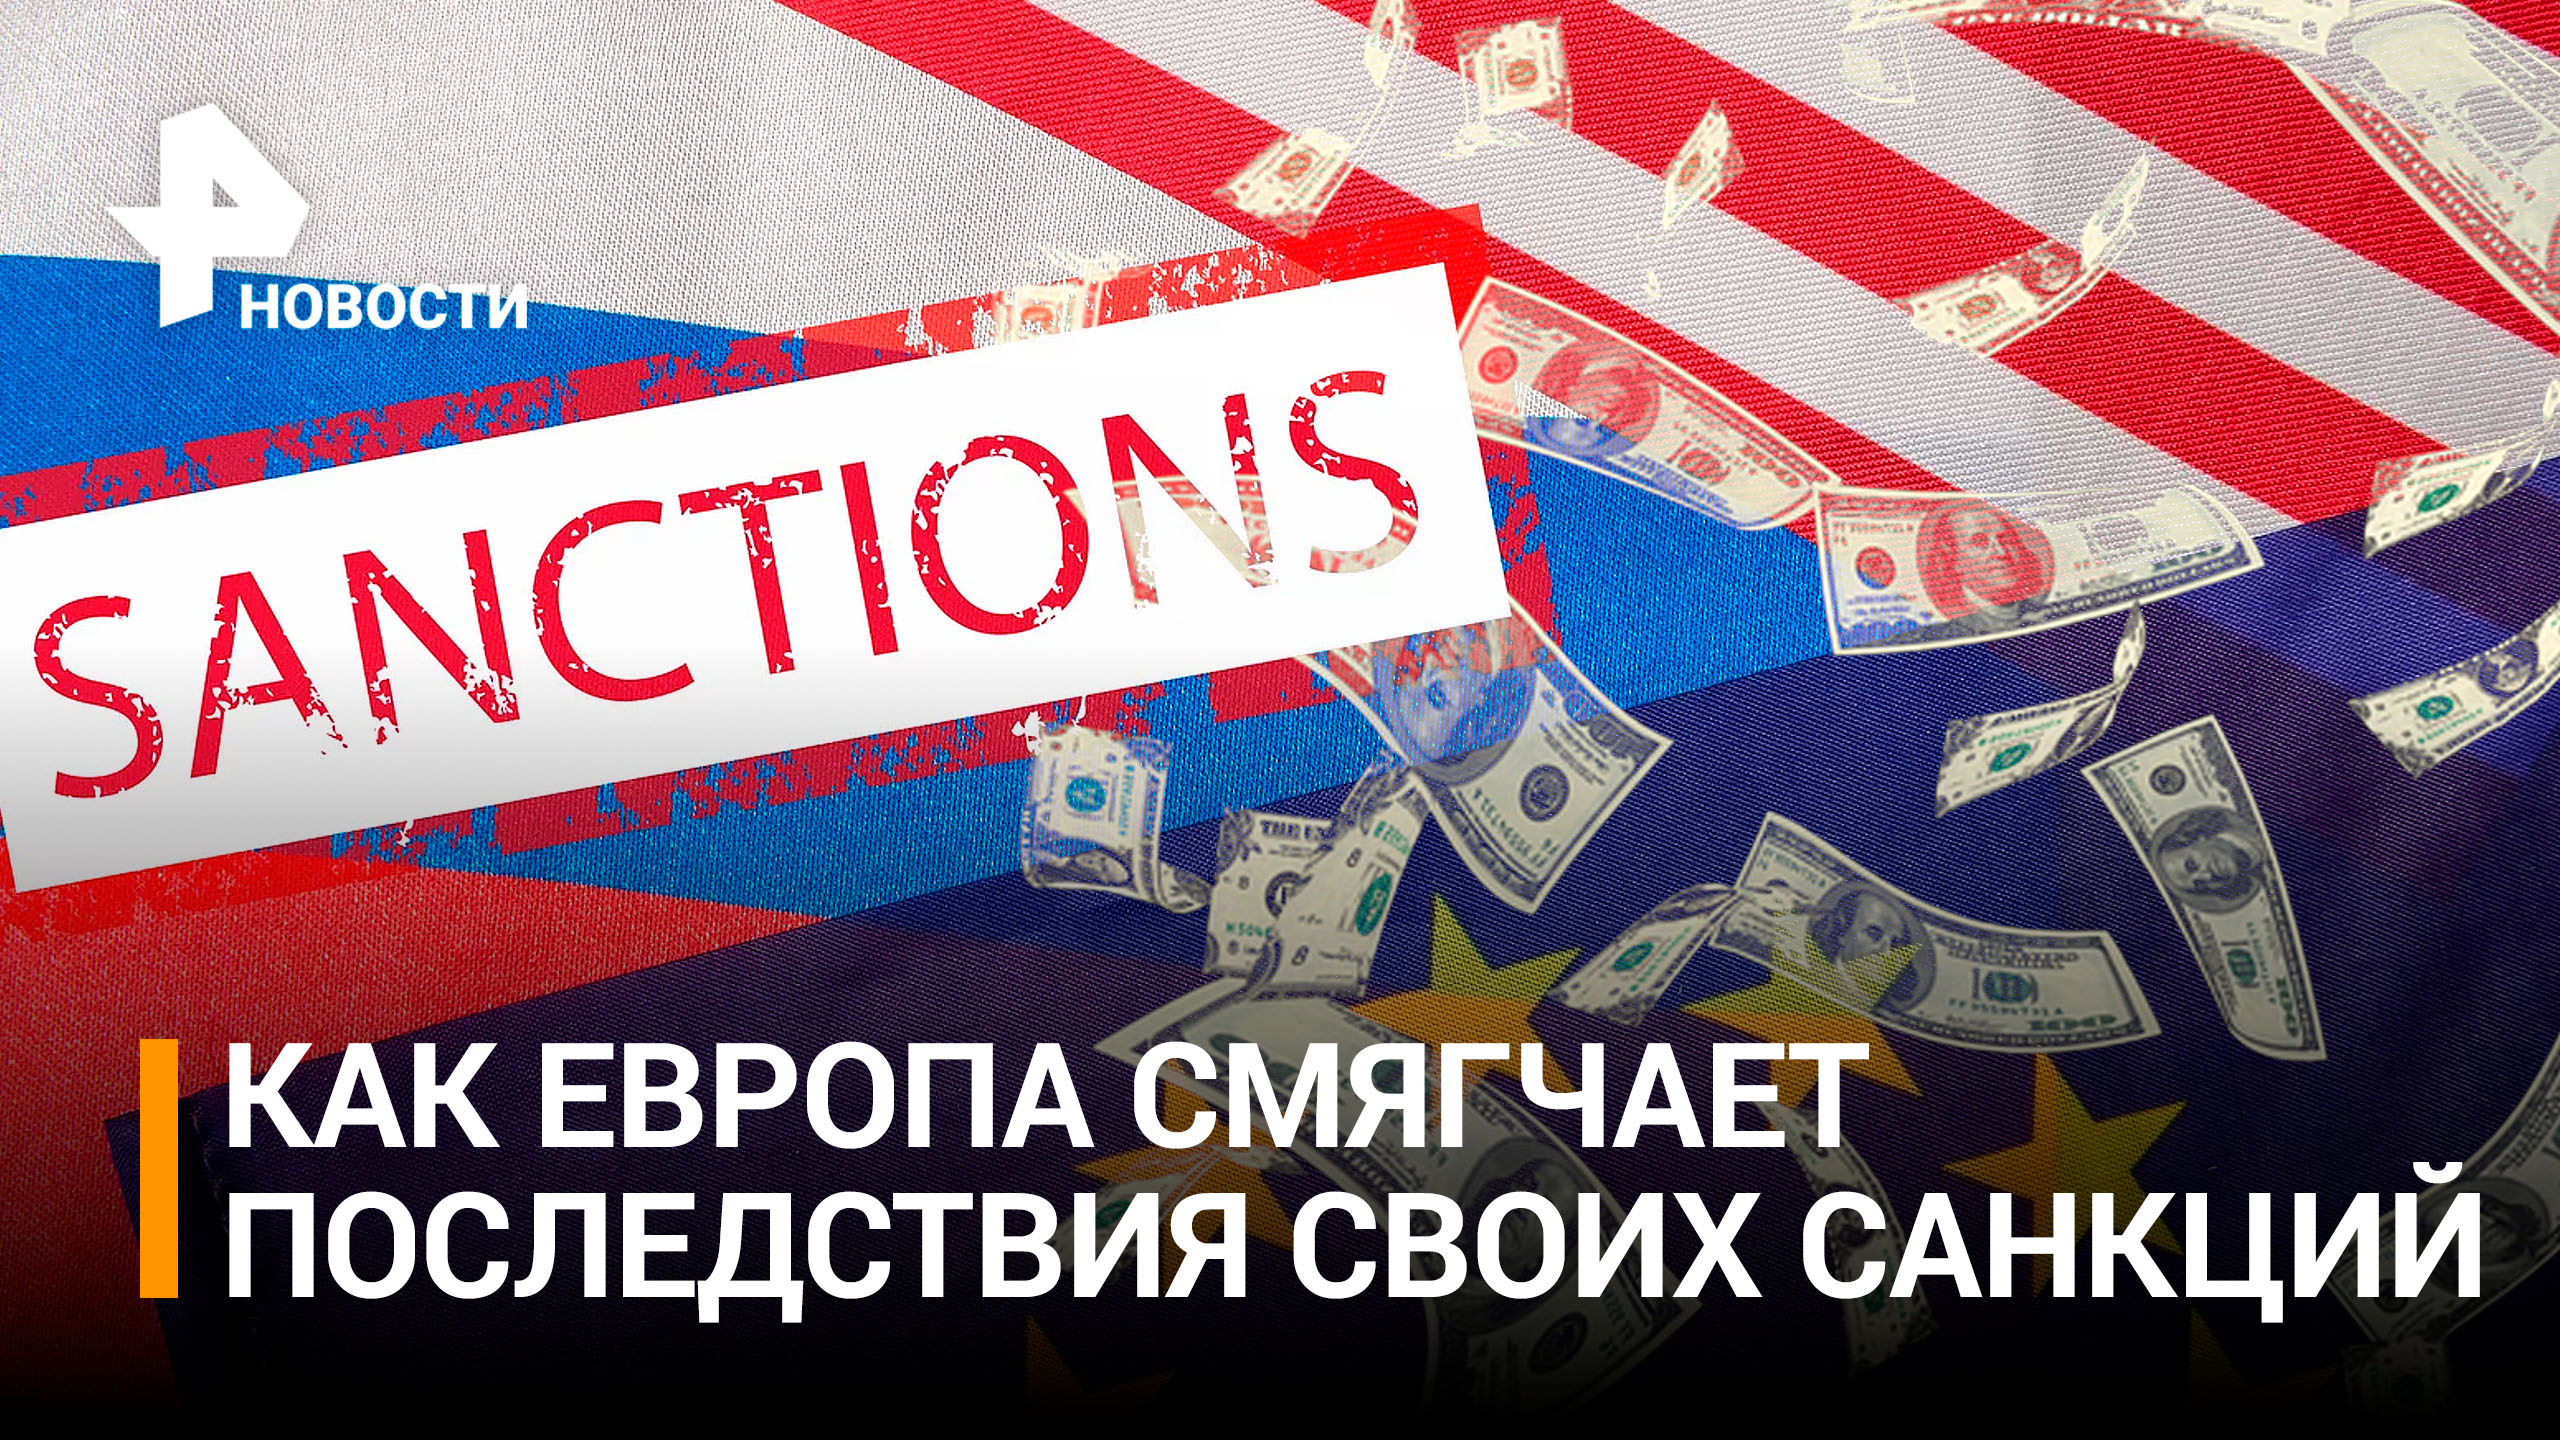 Антироссийские санкции обошлись ЕС в 500 млрд евро / РЕН Новости